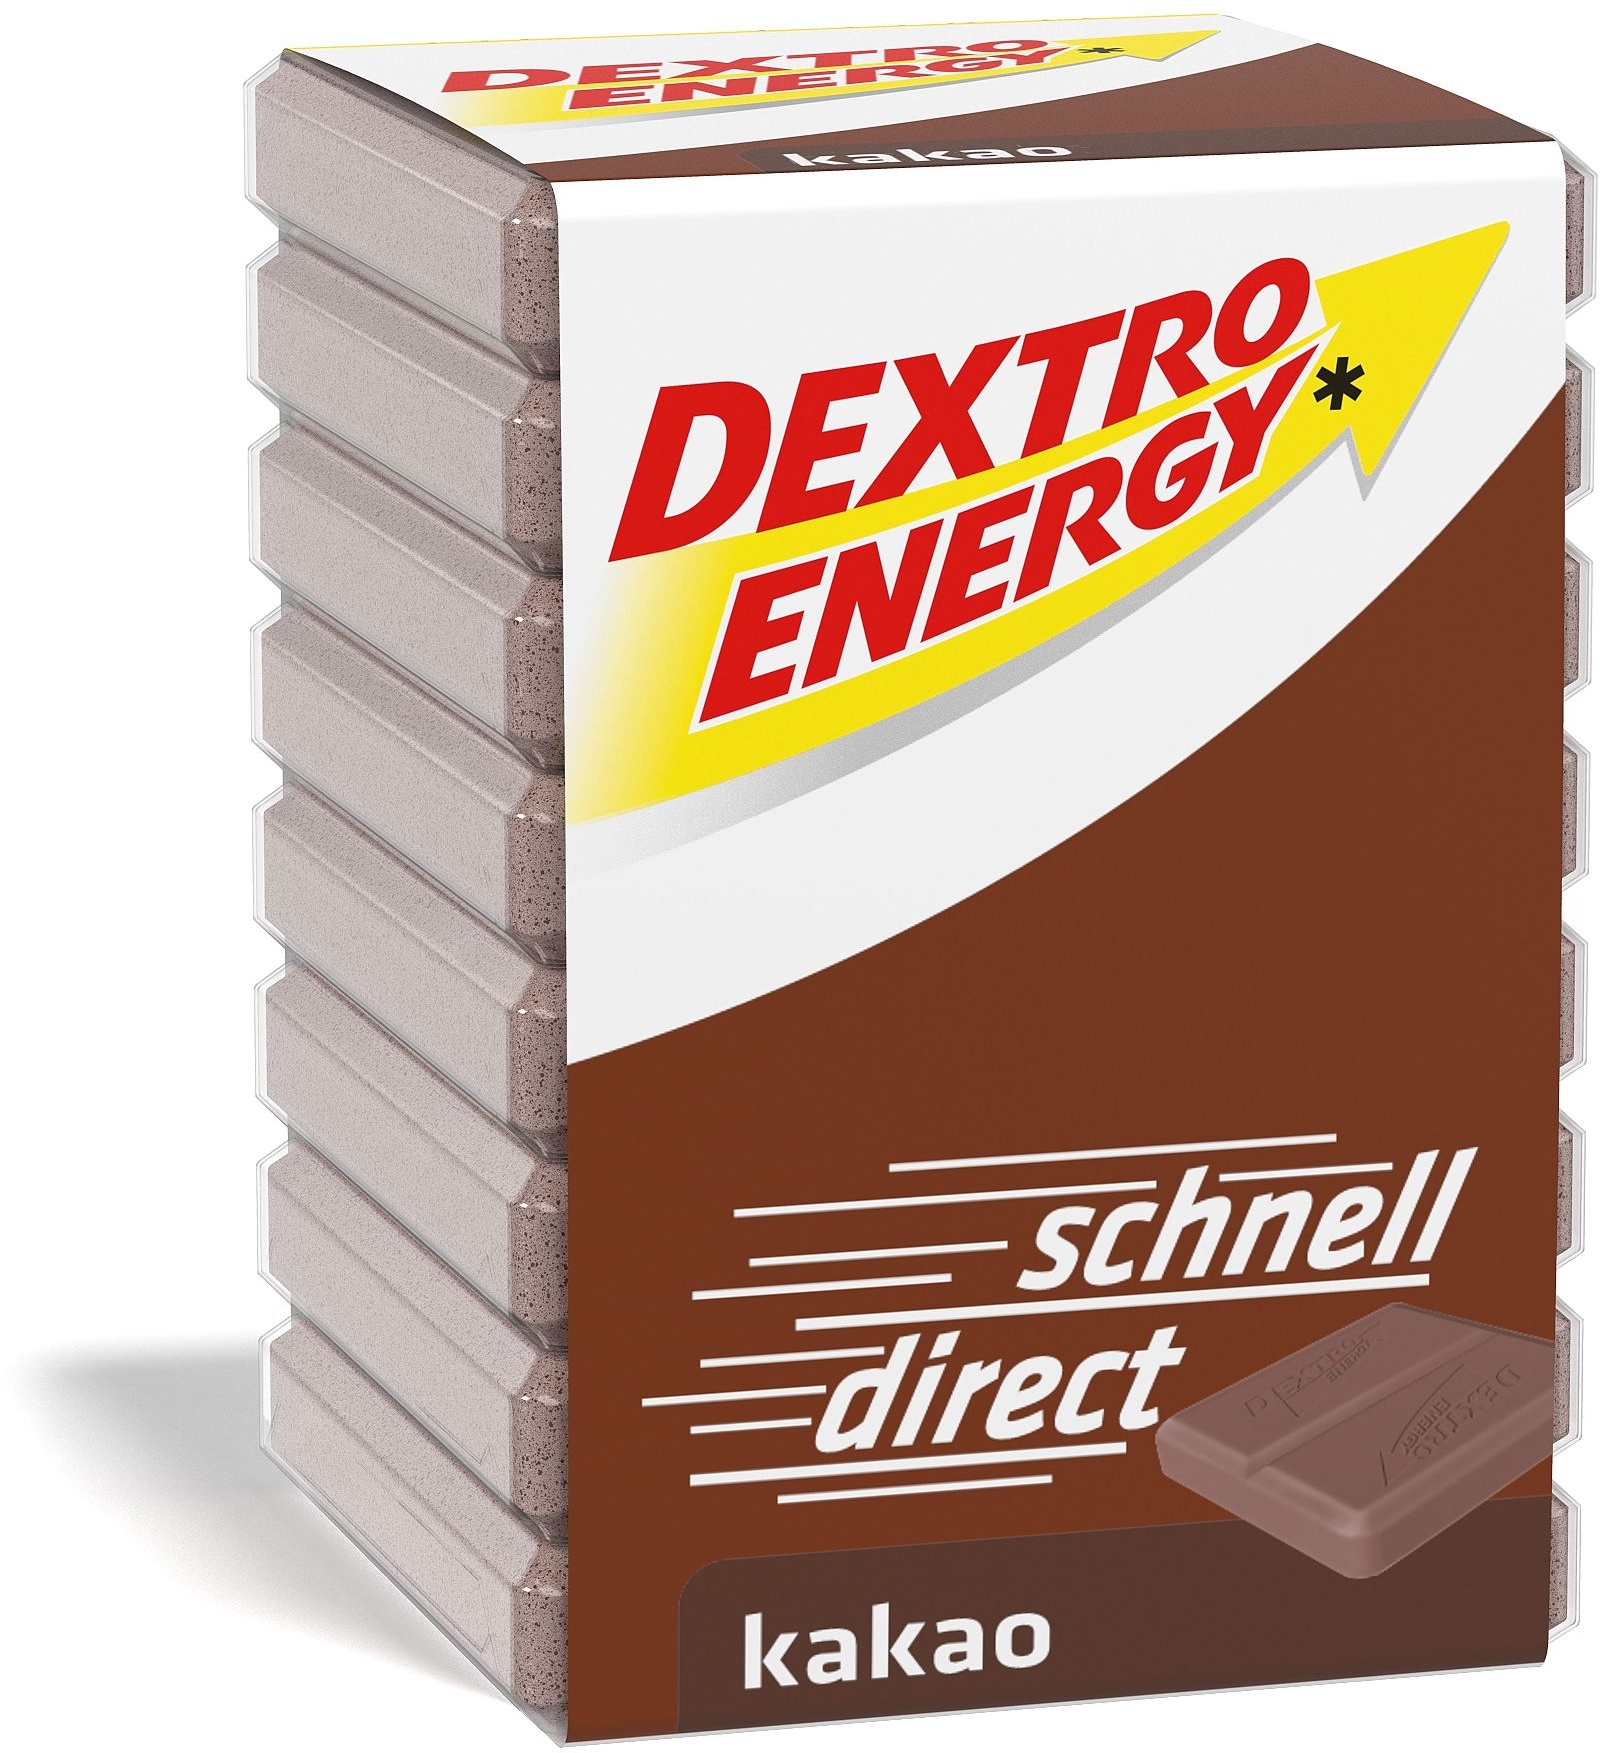 dextro energy kakao